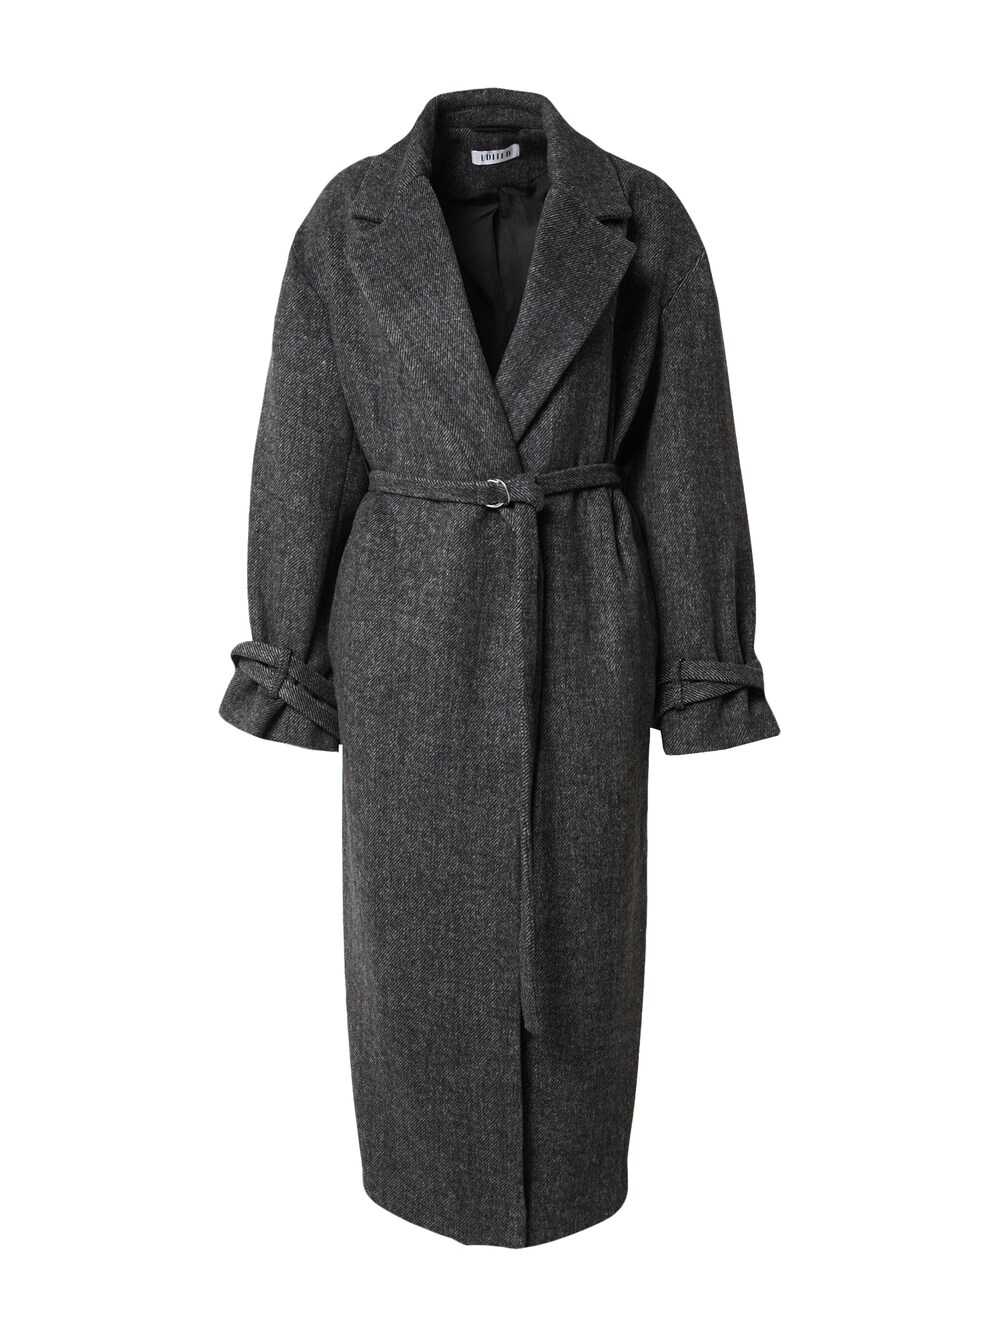 Межсезонное пальто EDITED Mareile, темно-серый межсезонное пальто edited tosca пестрый серый